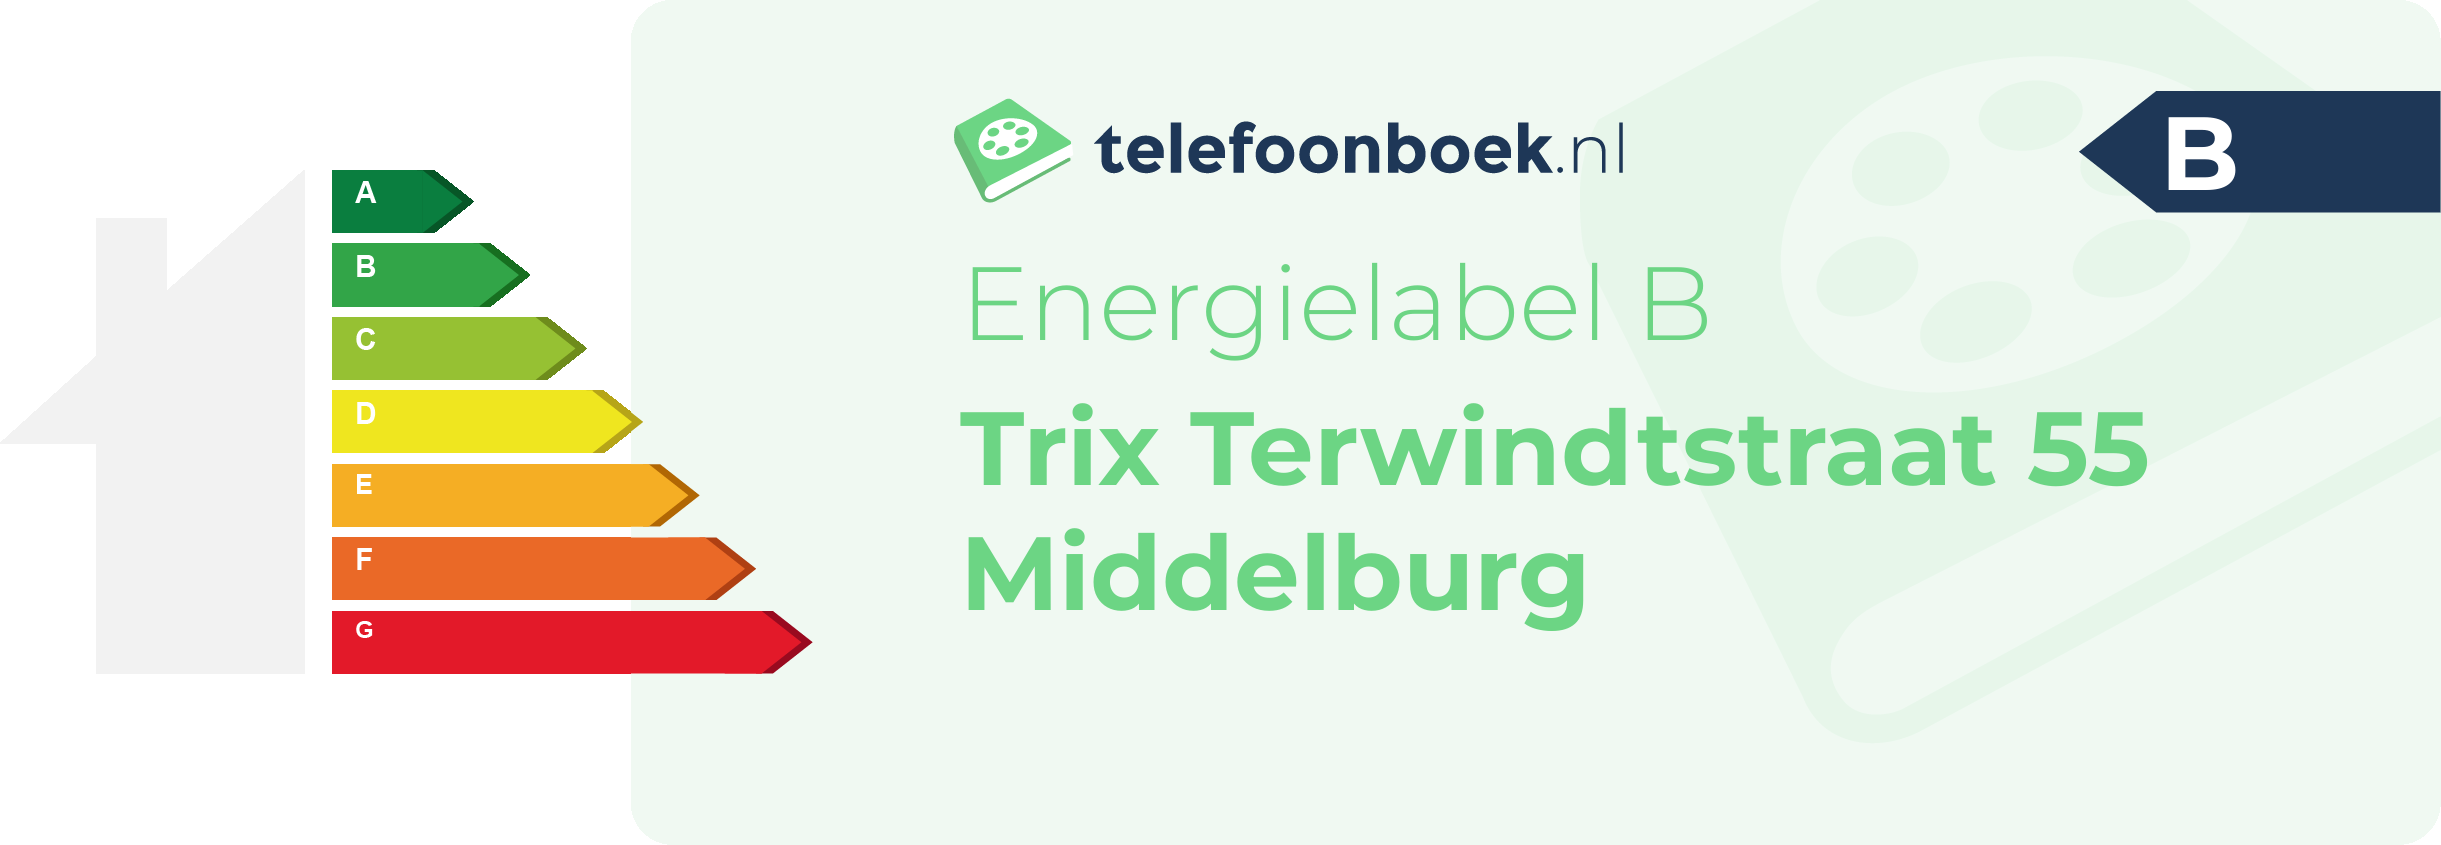 Energielabel Trix Terwindtstraat 55 Middelburg